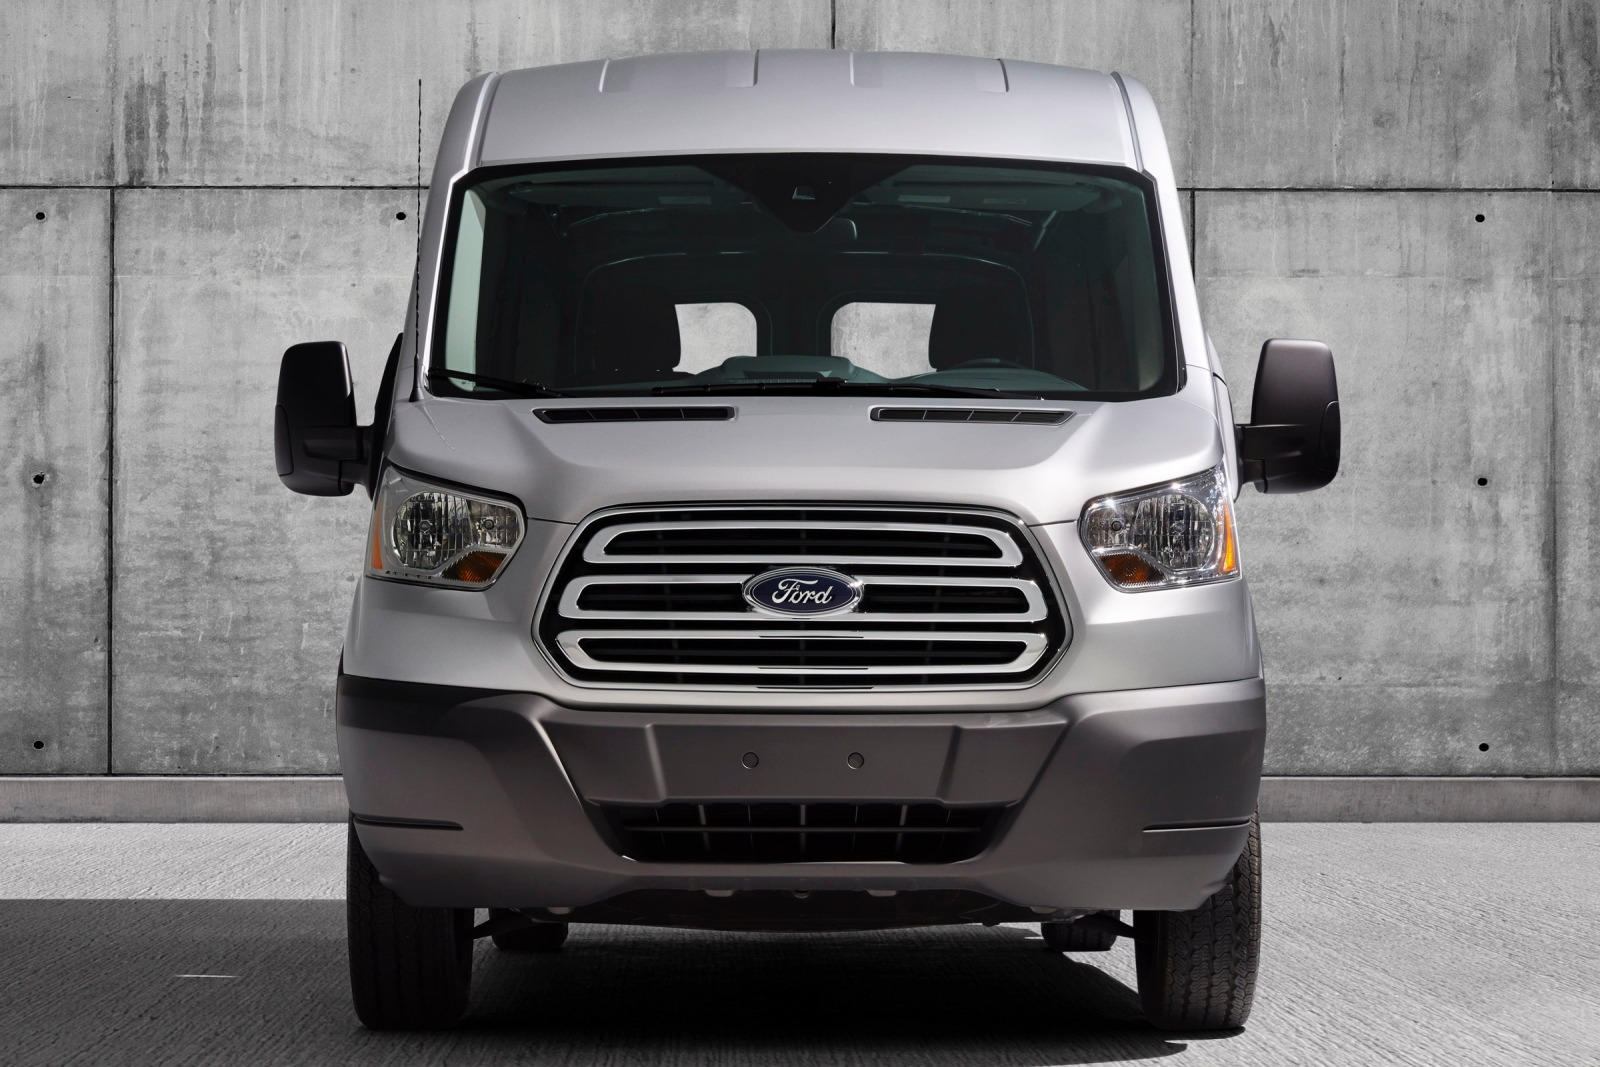 2019 Ford Transit Cargo Van Review, Pricing | Transit Cargo Van Models |  CarBuzz